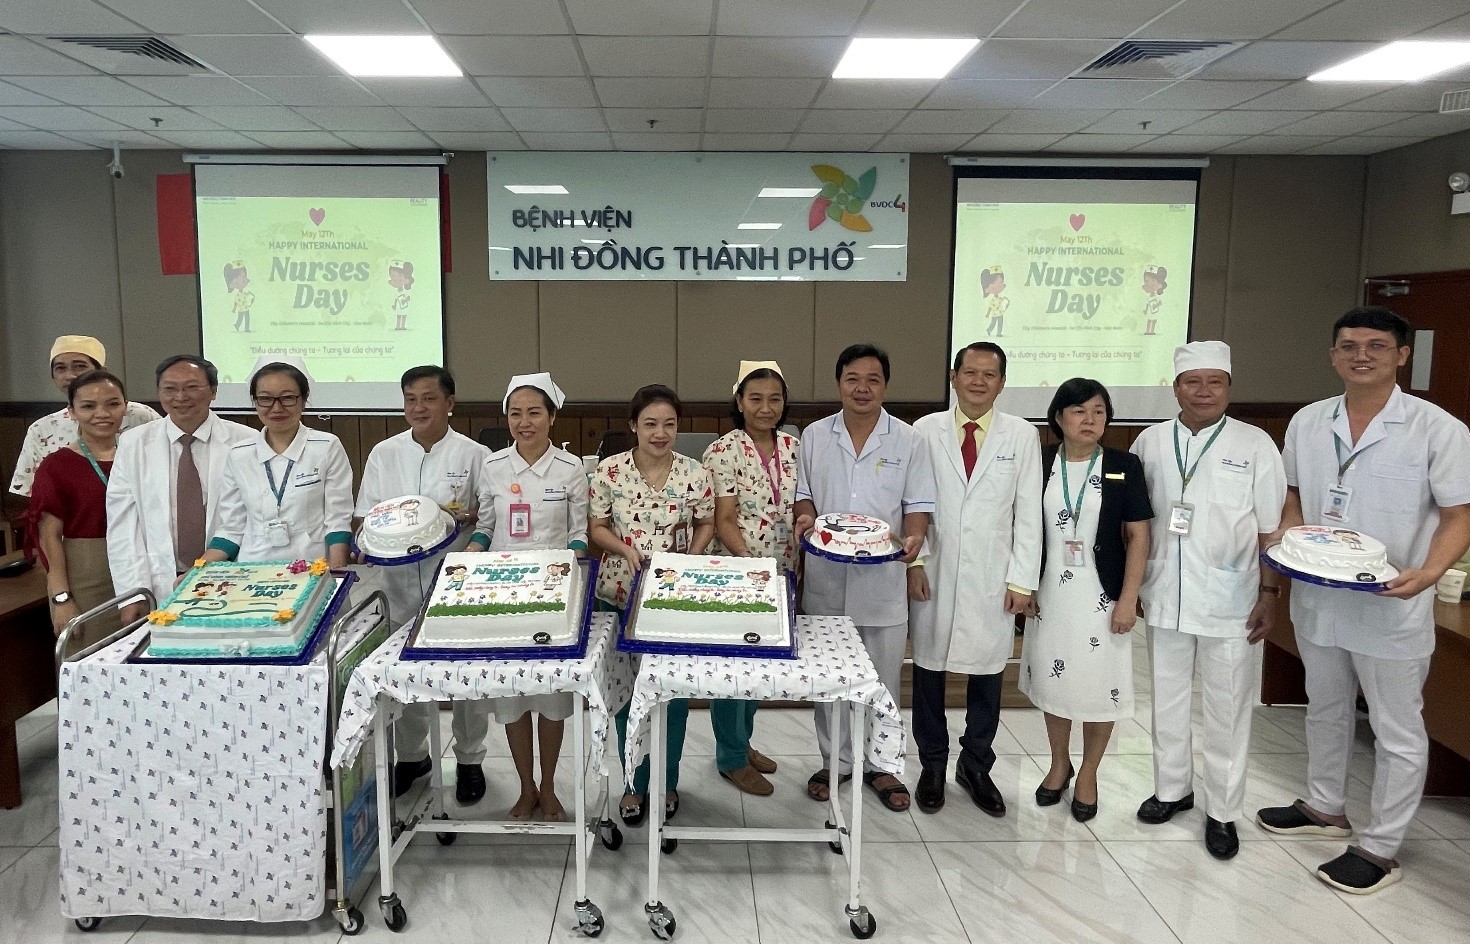 PGS.TS.BS Trương Quang Định – Giám đốc bệnh viện gửi lời chúc mừng đến toàn thể Điều dưỡng - Kỹ thuật viên của bệnh viện ngày 12.05